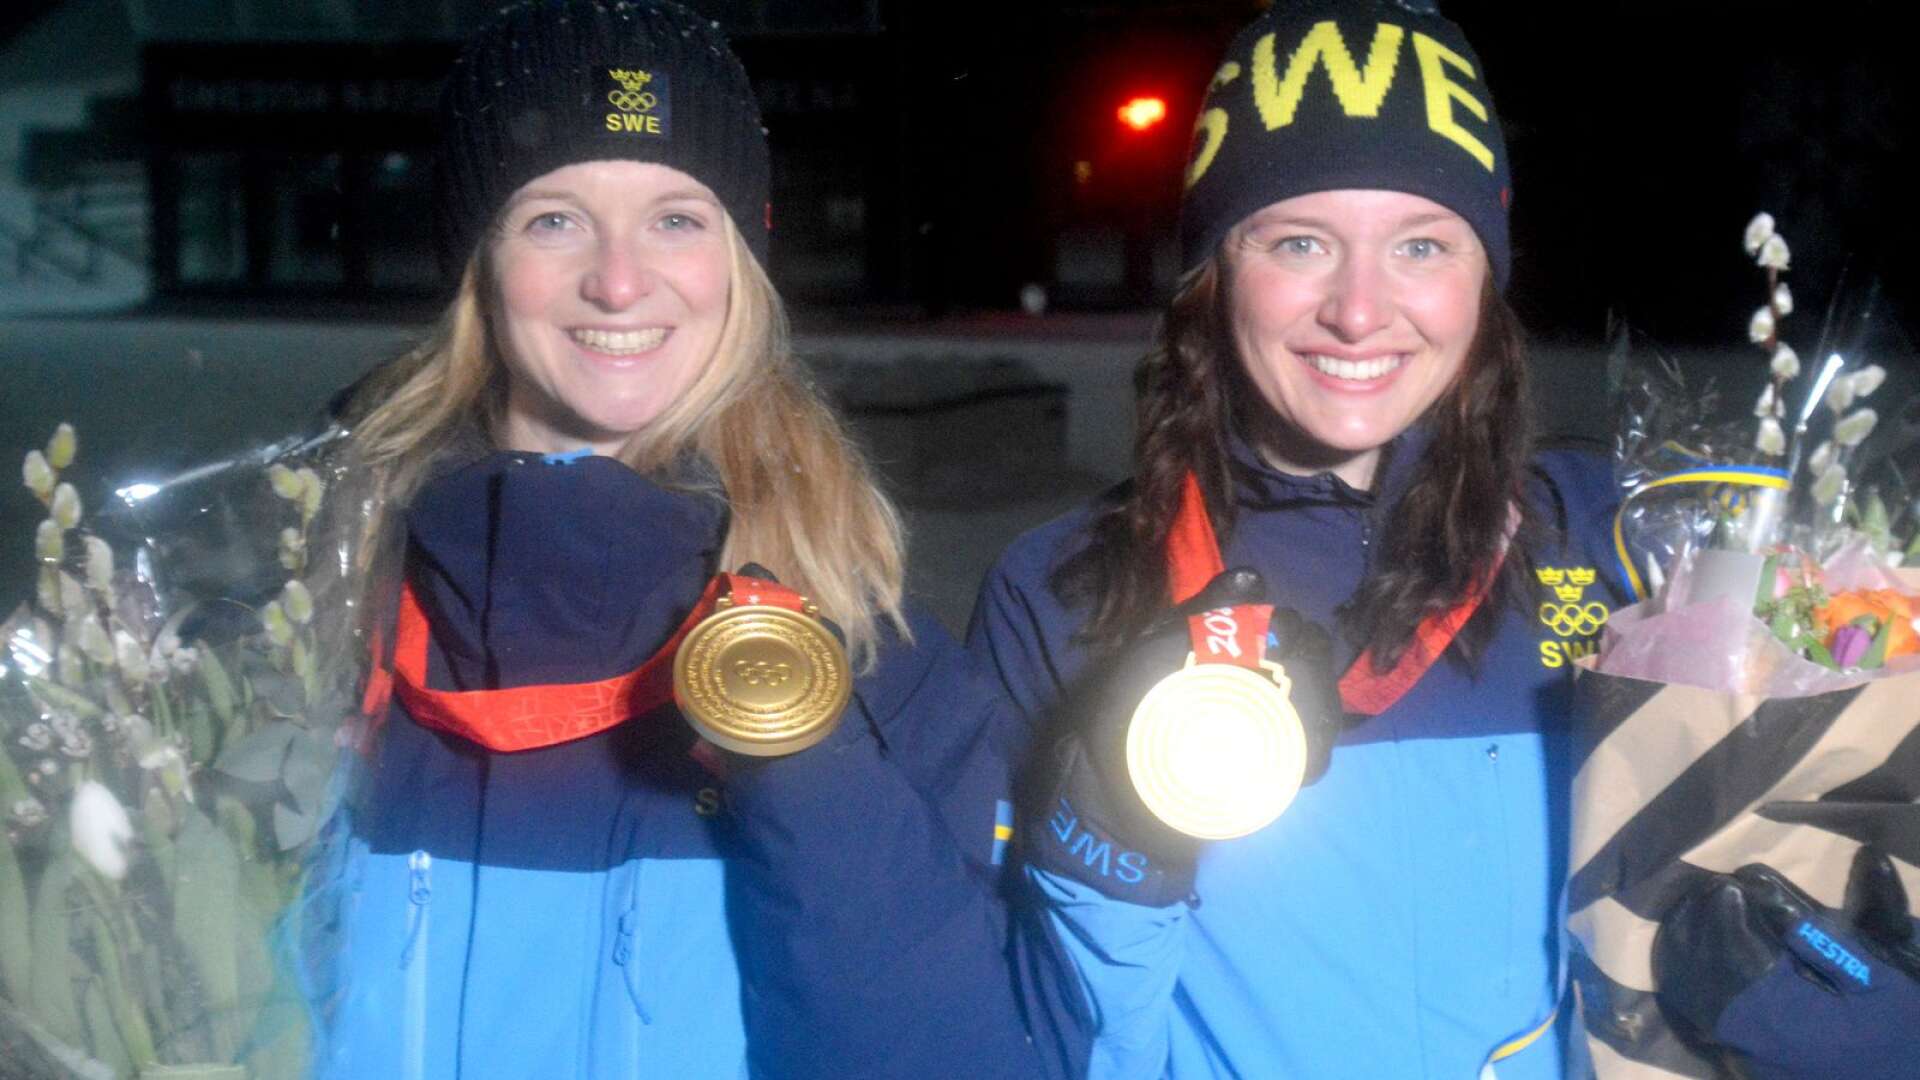 Mona Brorsson och Linn Persson var trötta men väldigt glada när de efter en lång resa kom hem till Östersund på måndagen, som historiska guldmedaljörer på OS.